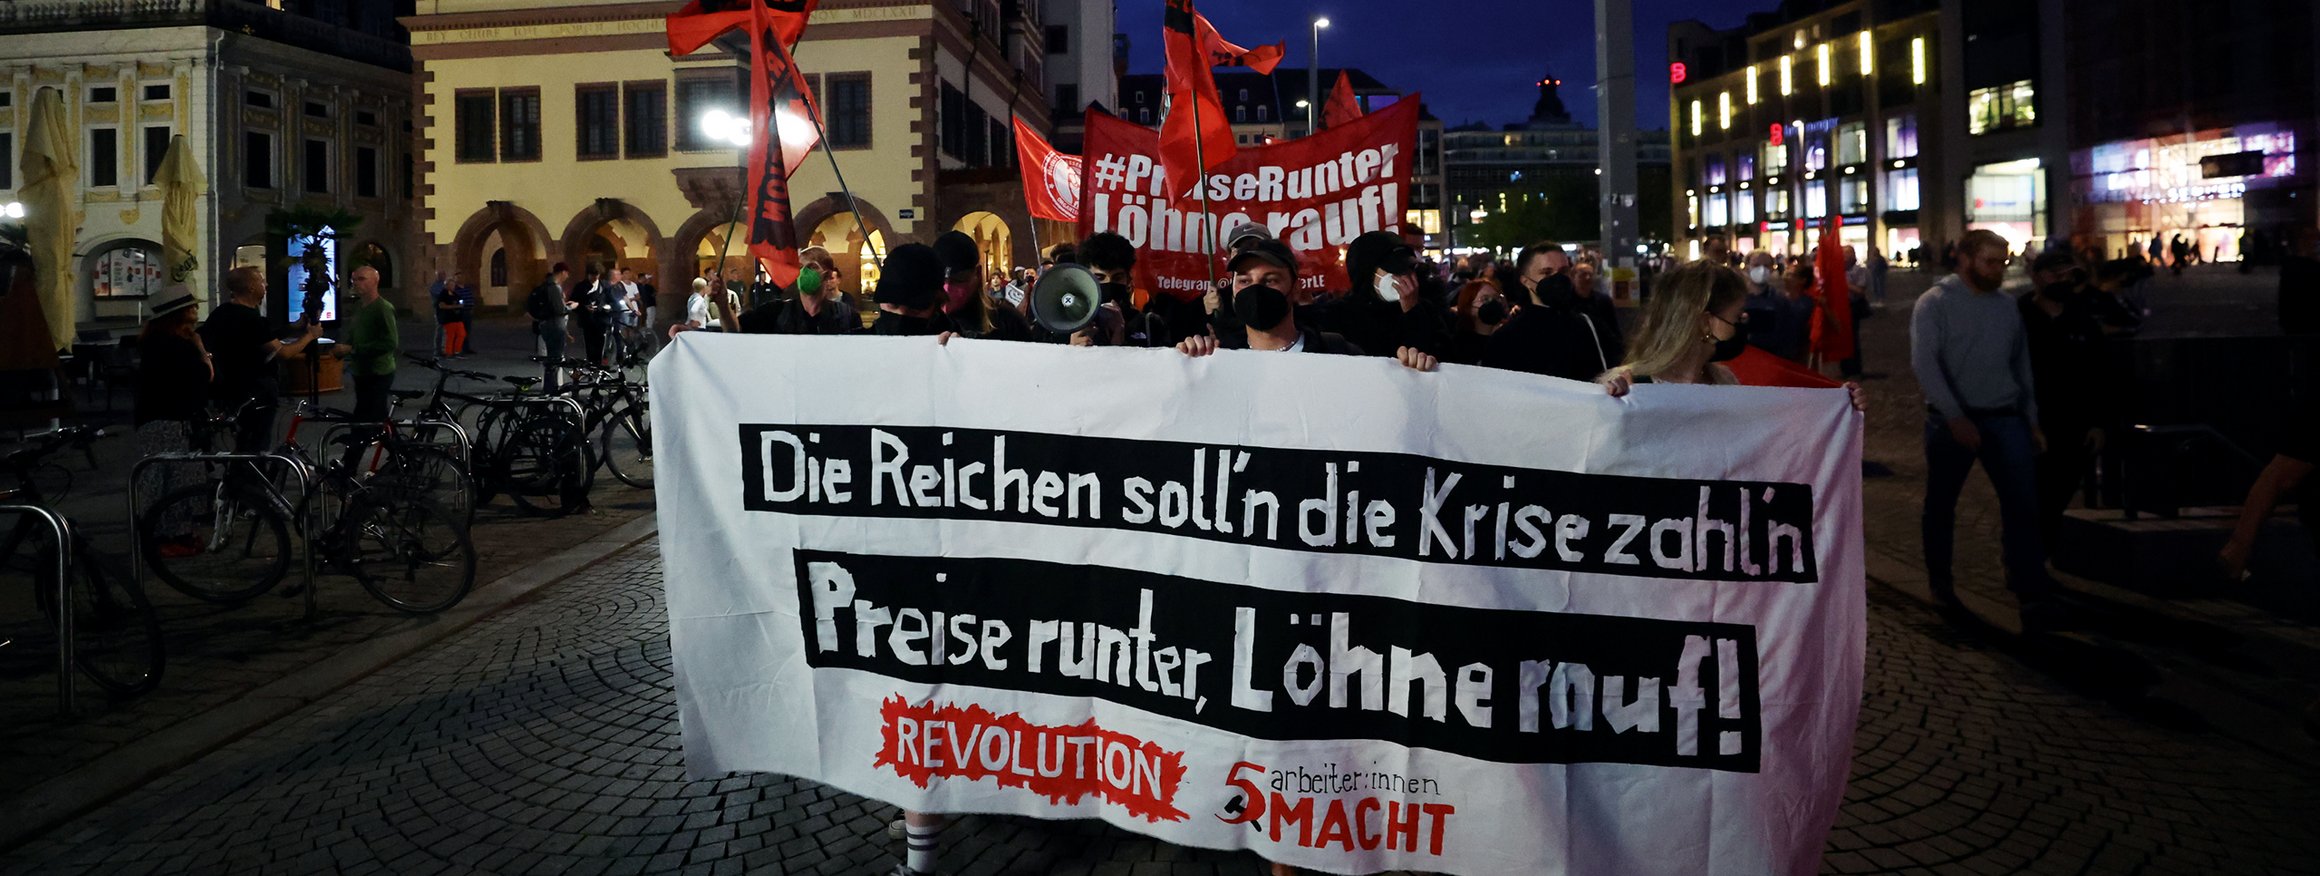 Eine Demonstration in Leipzig im September 2022 abends gegen die Energie- und Sozialpolitik der Bundesregierung.